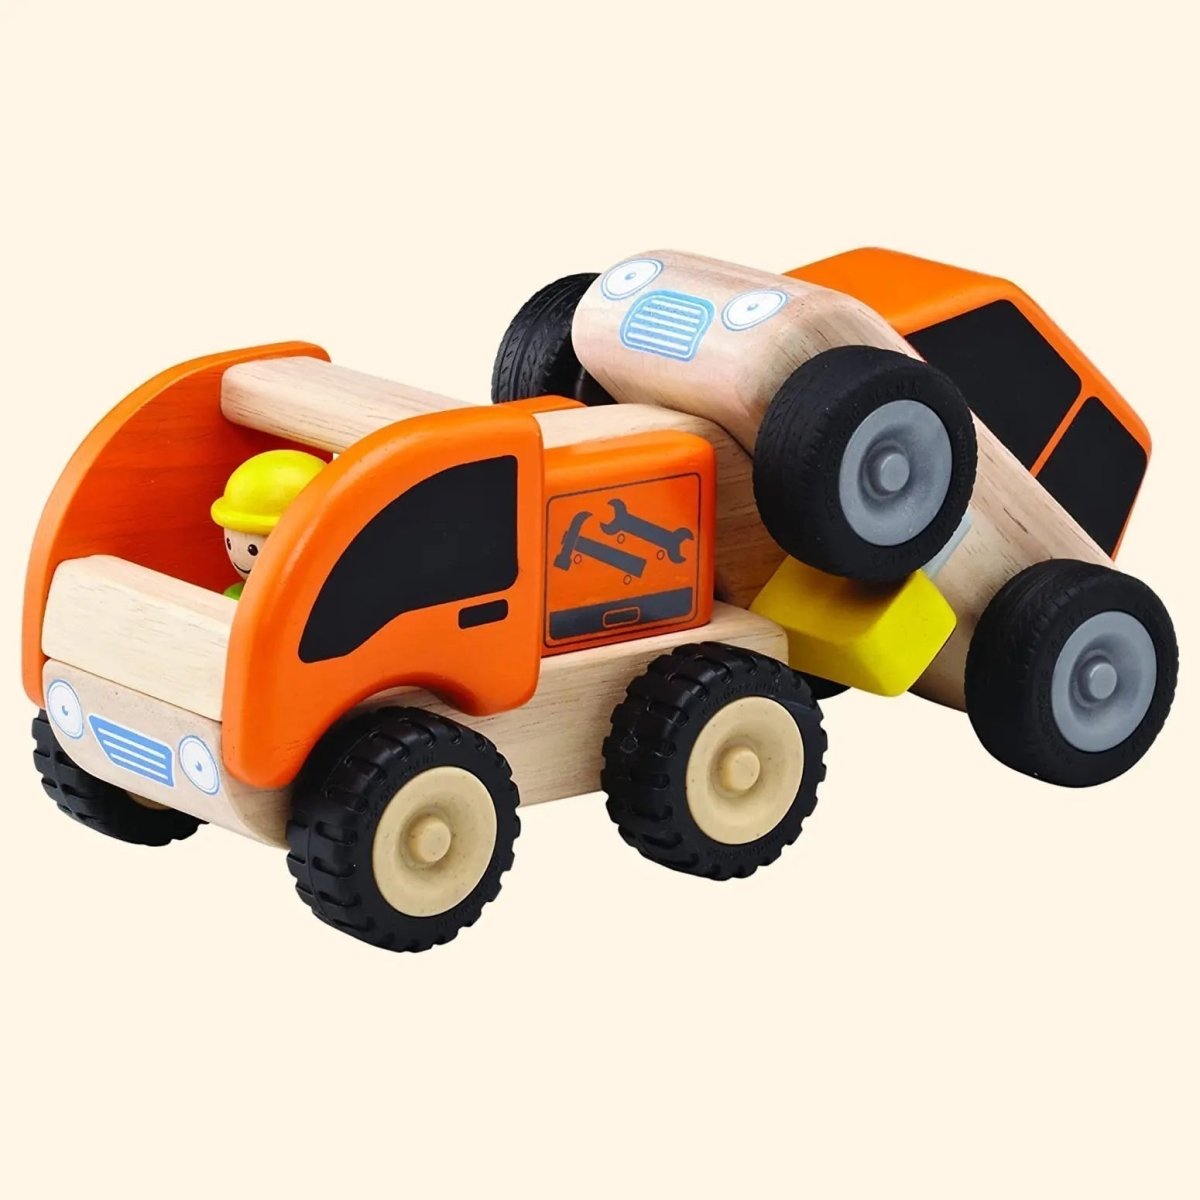 Wooden Toy Tow Truck - Zidar Kid